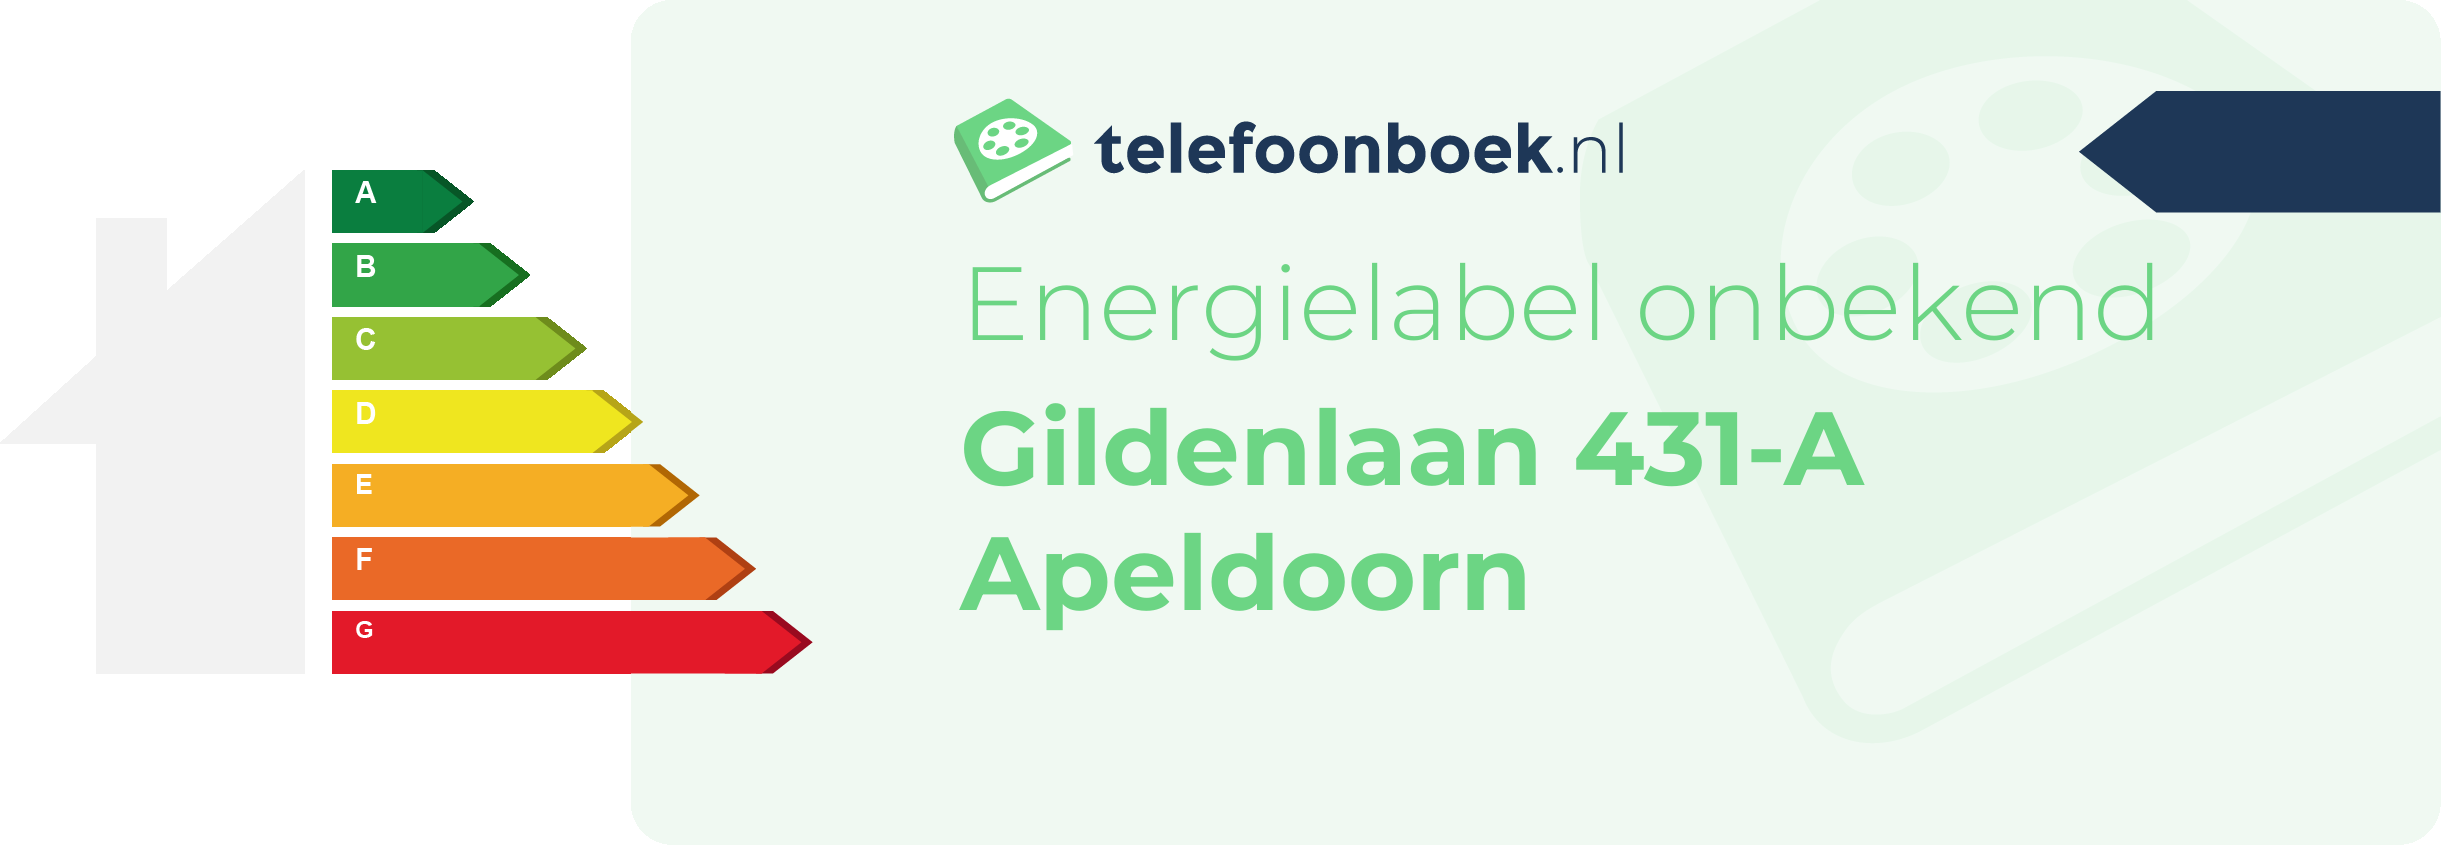 Energielabel Gildenlaan 431-A Apeldoorn